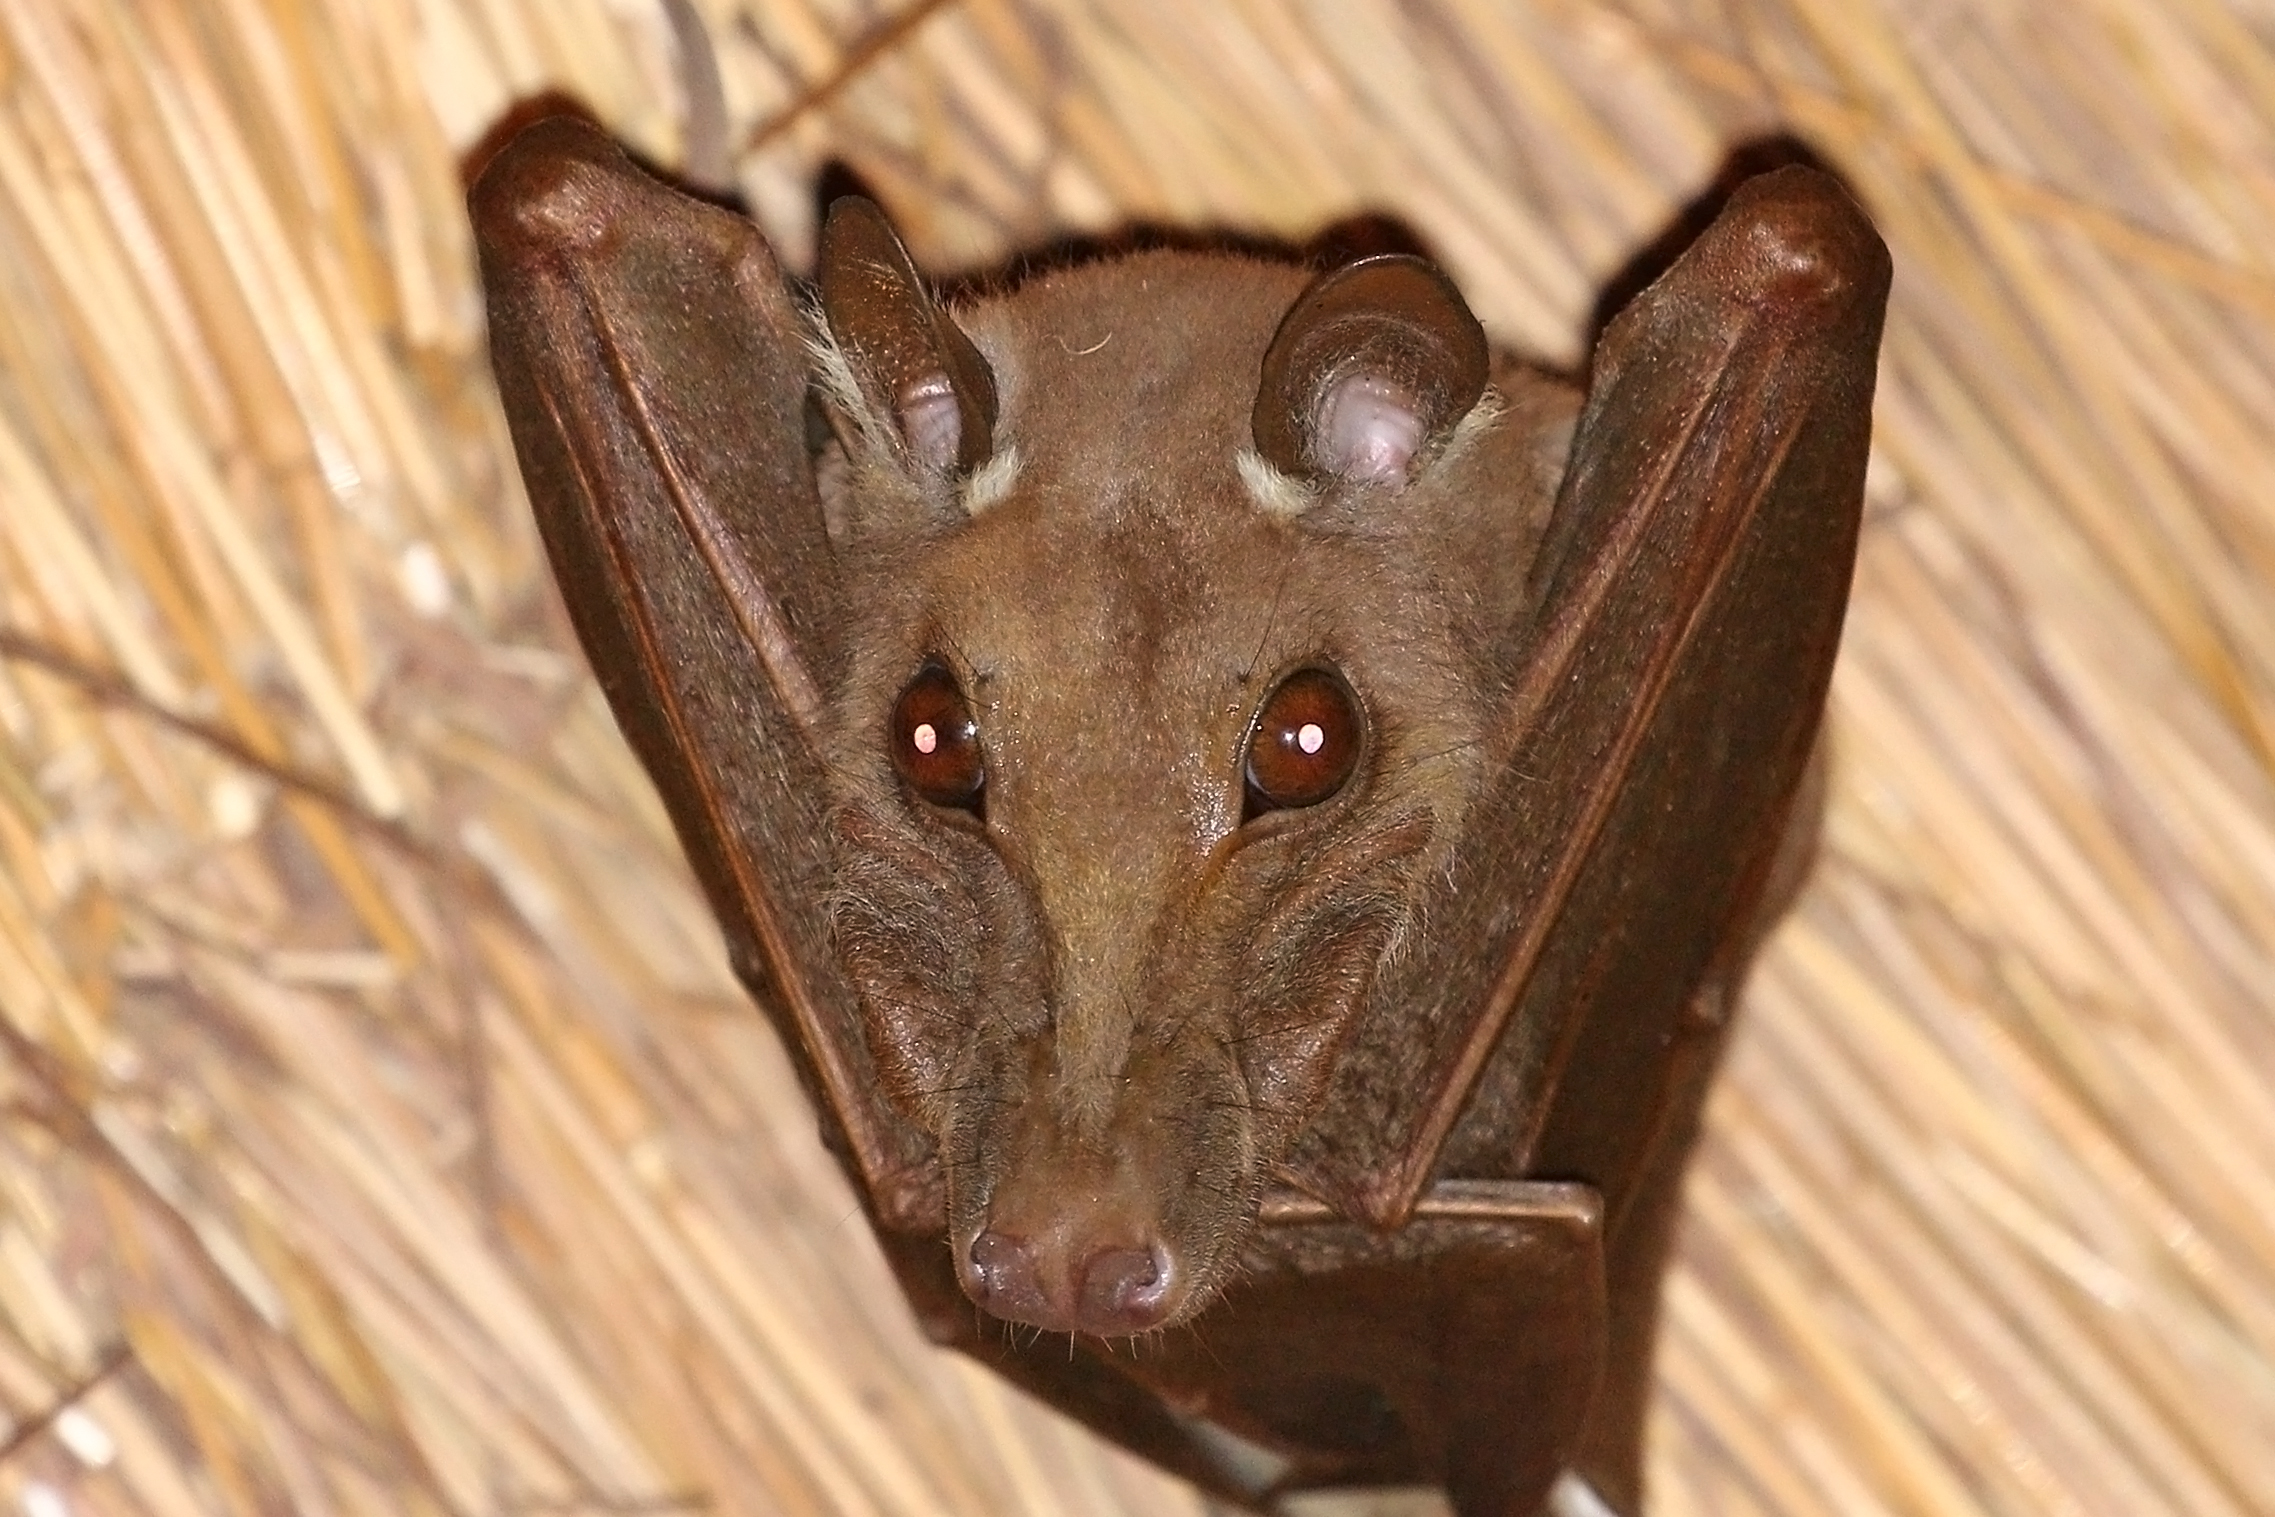 Gambian epauletted fruit bat (Epomophorus gambianus)